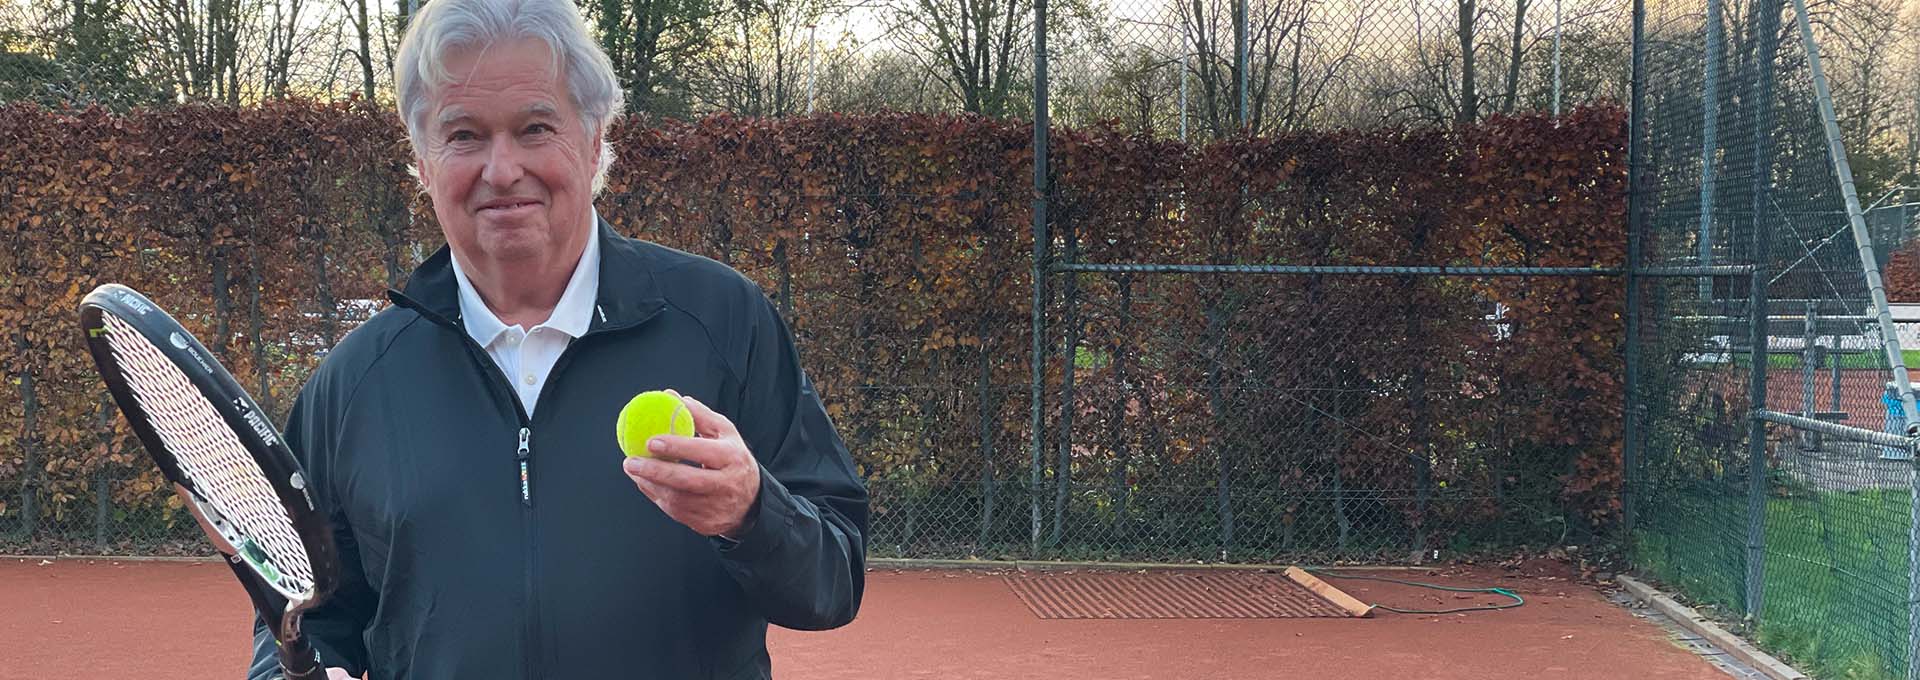 Usuario de audífonos Bernafon Alpha con pelota de tenis y raqueta en la mano en la pista mirando a la cámara listo para jugar